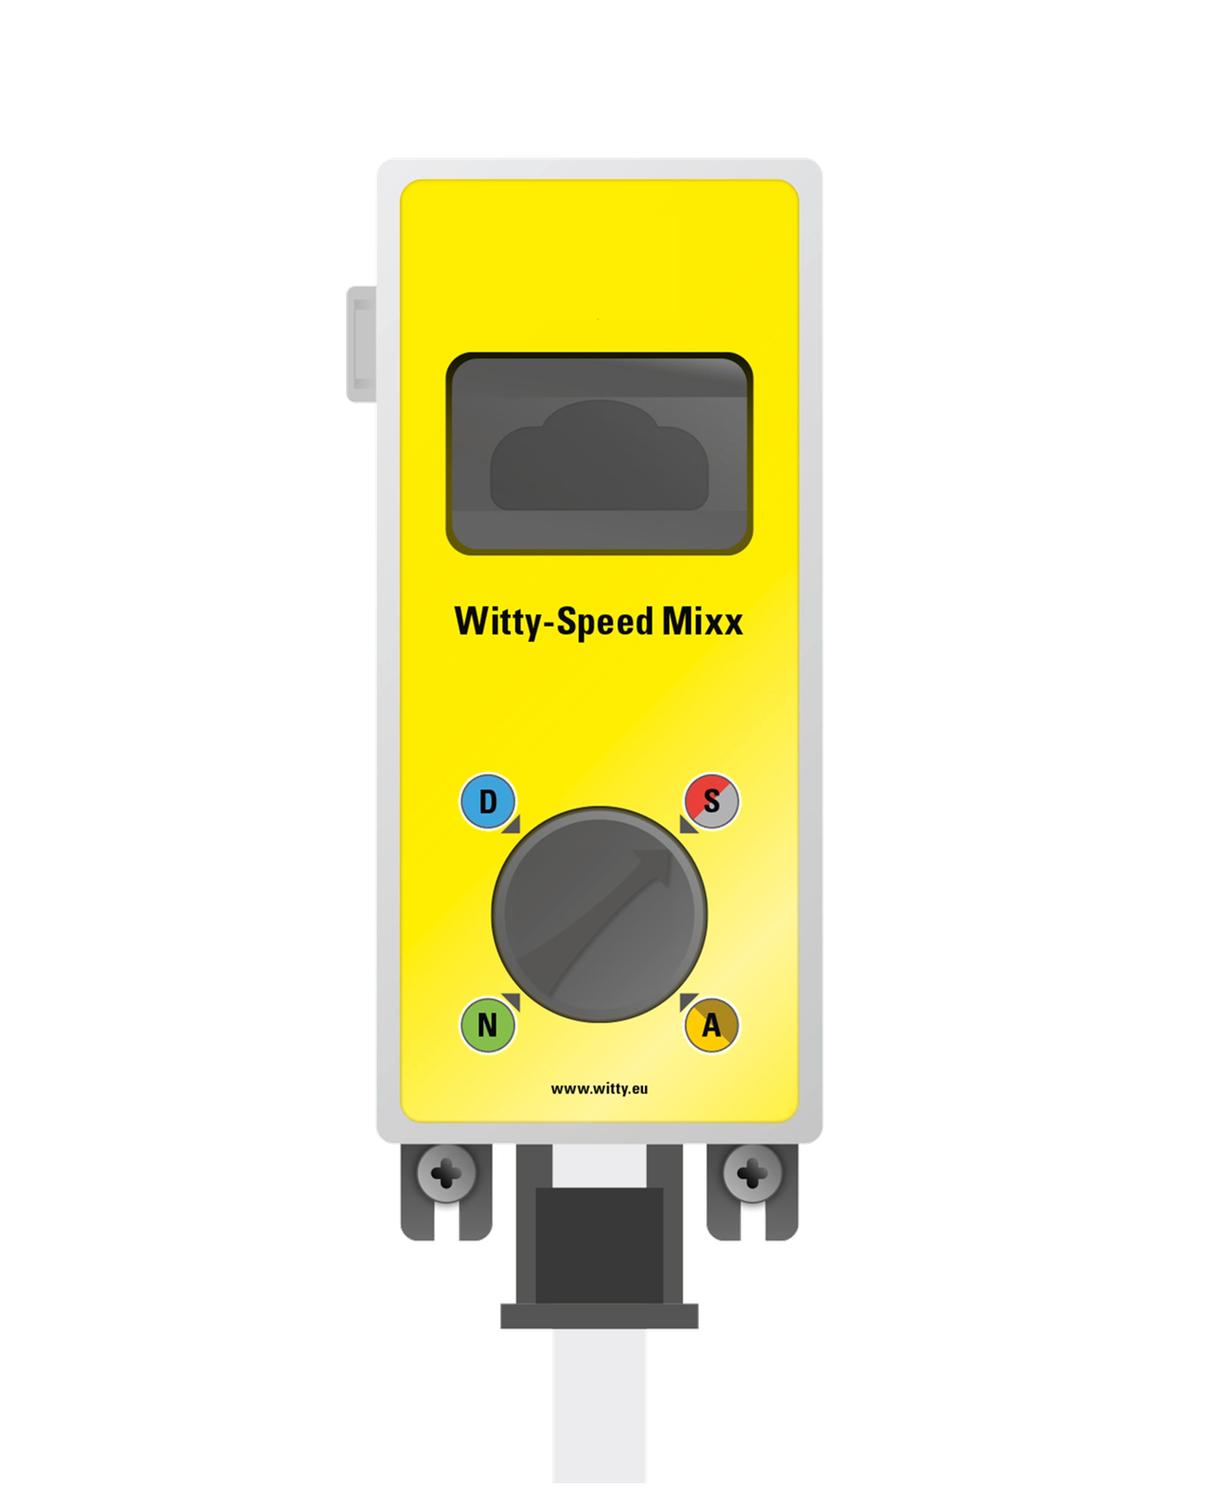 Witty-Speed Mixx